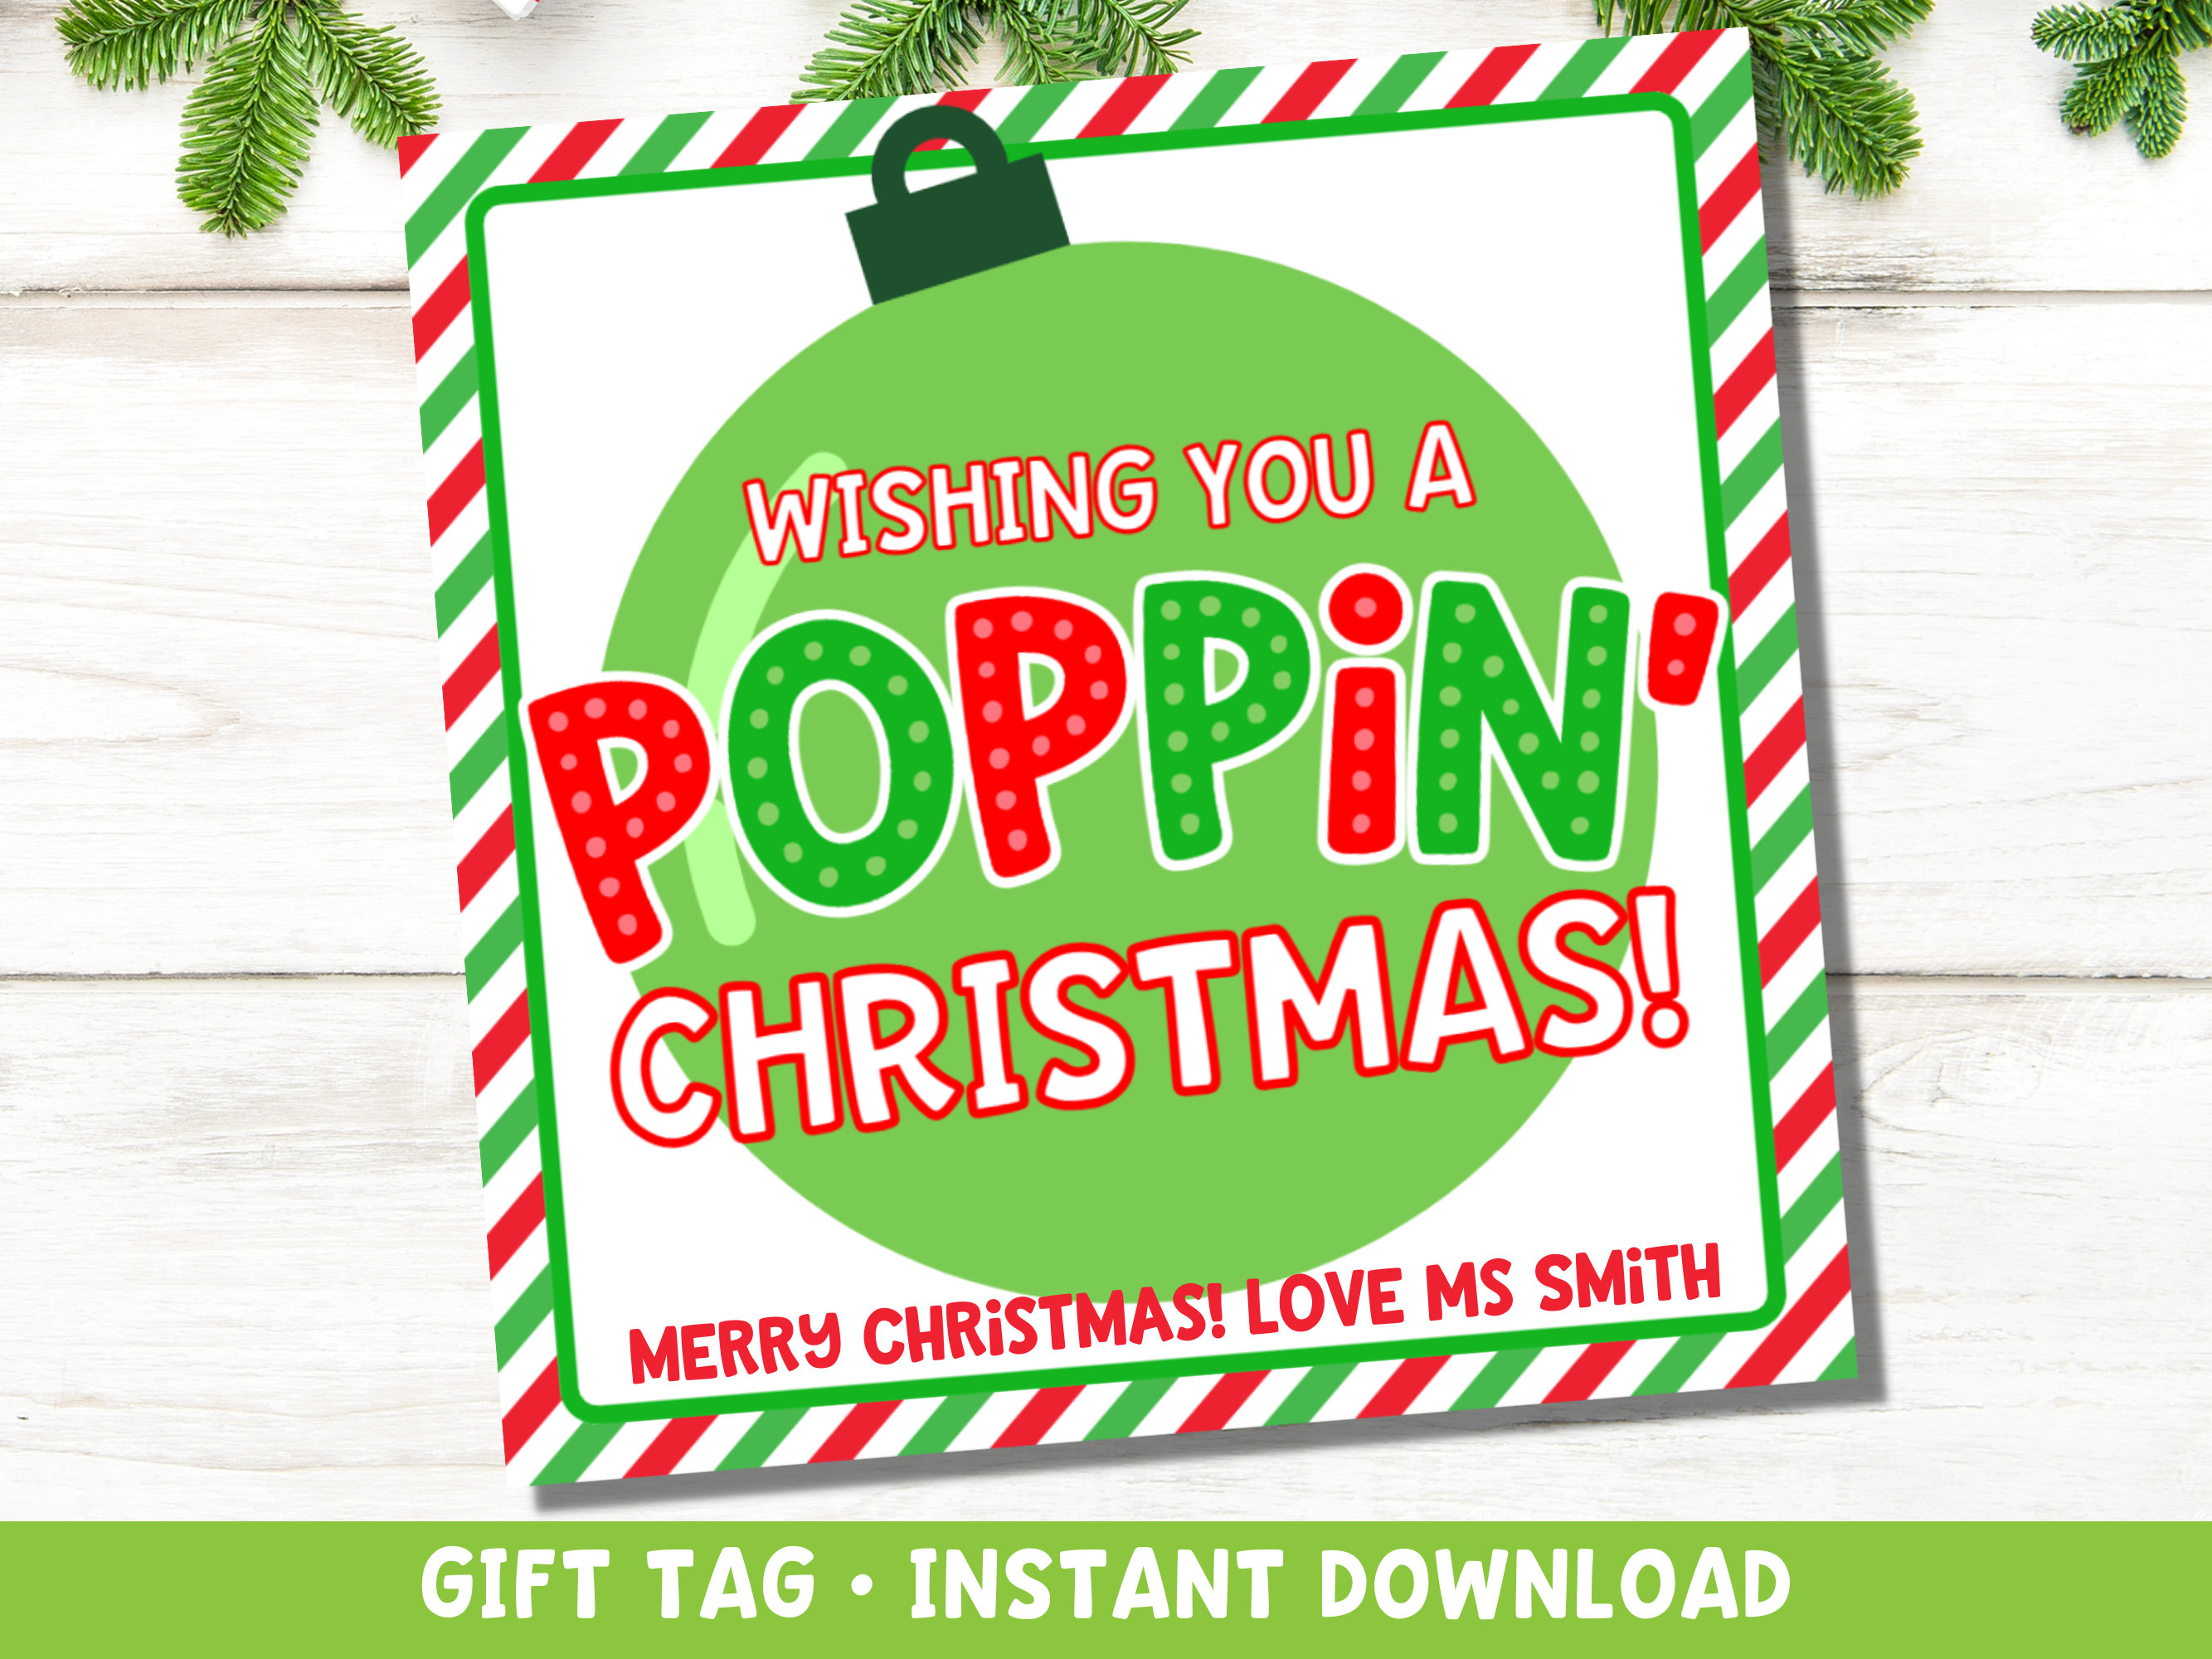 Christmas Pop It Fidget Gift Tags Circles IDCHRISTPOPIT0520 – Bailey Bunch  Designs